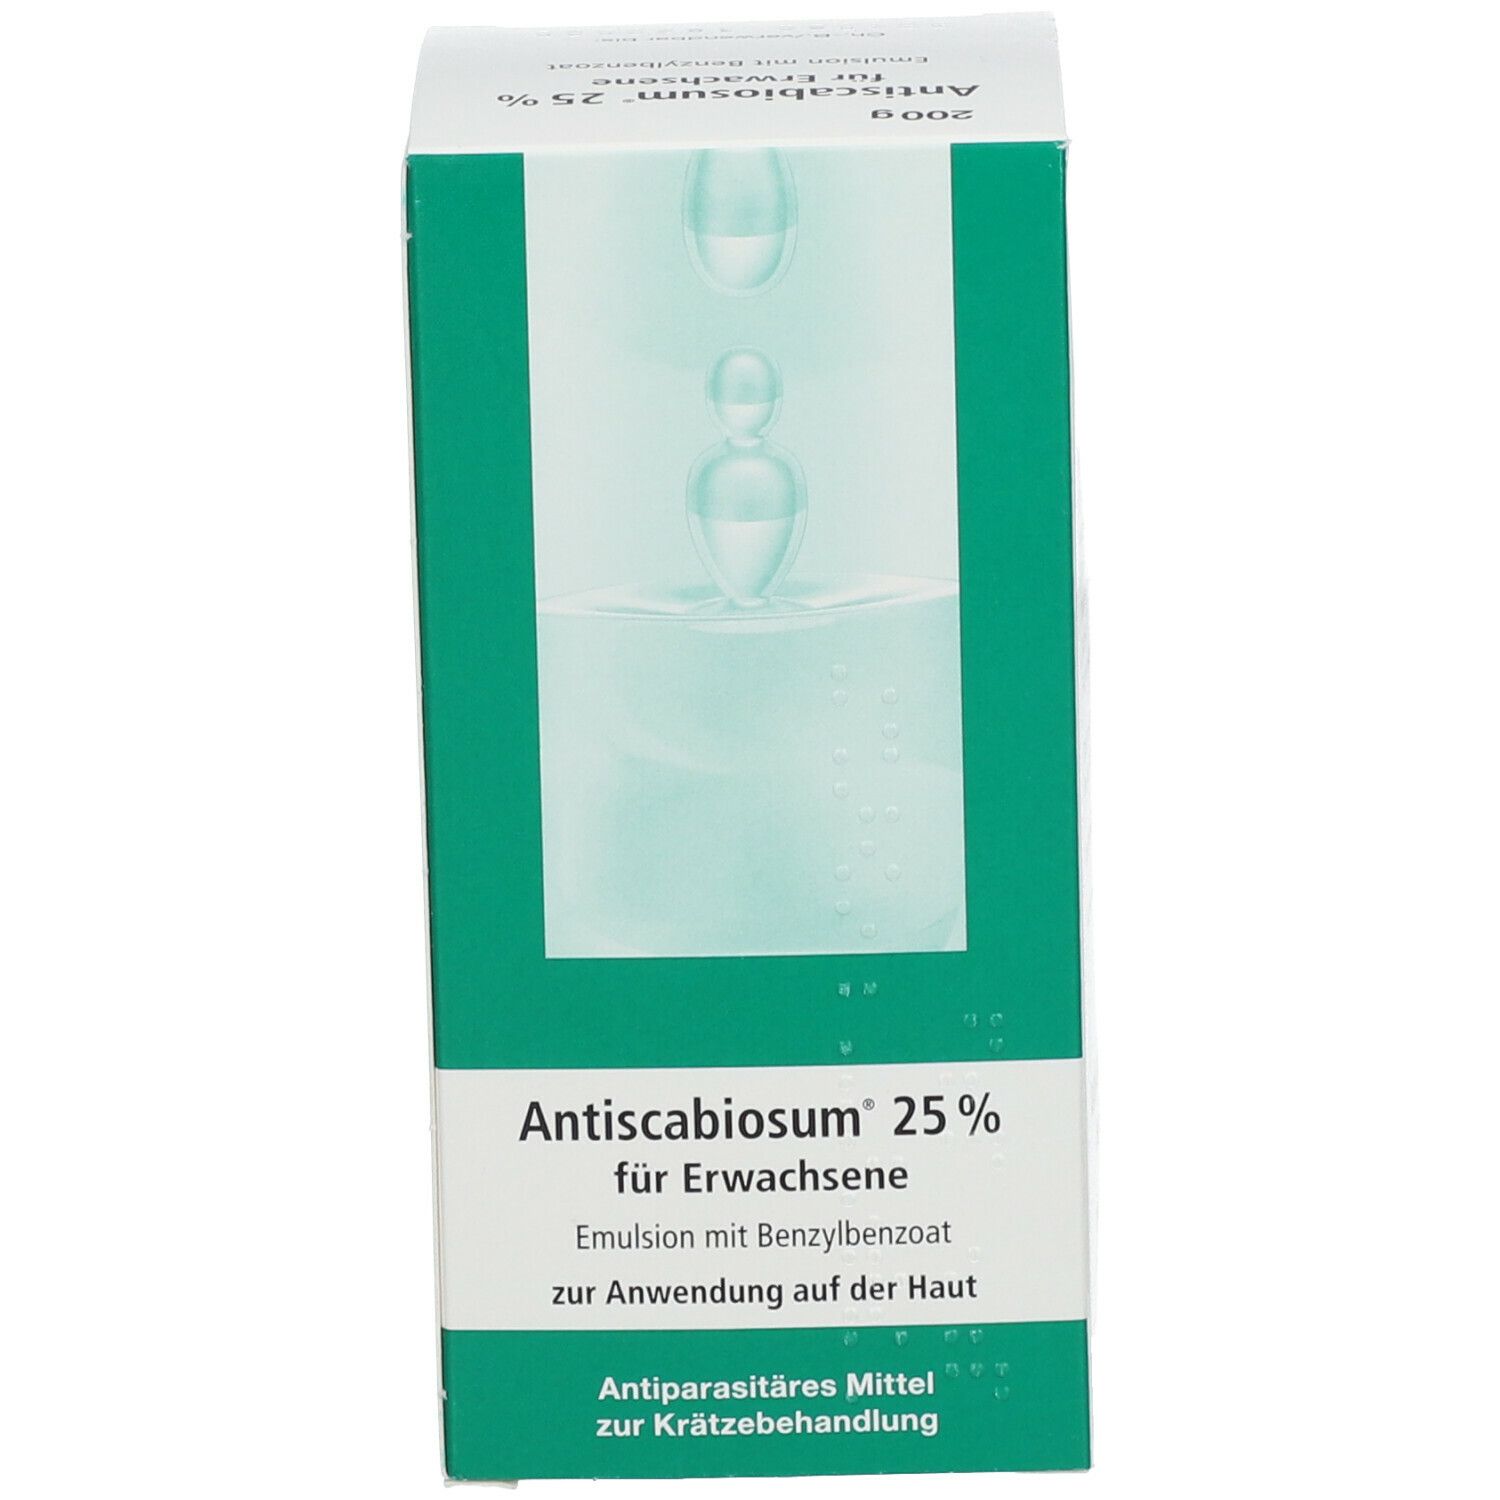 Antiscabiosum® 25 % für Erwachsene 200 g - SHOP APOTHEKE